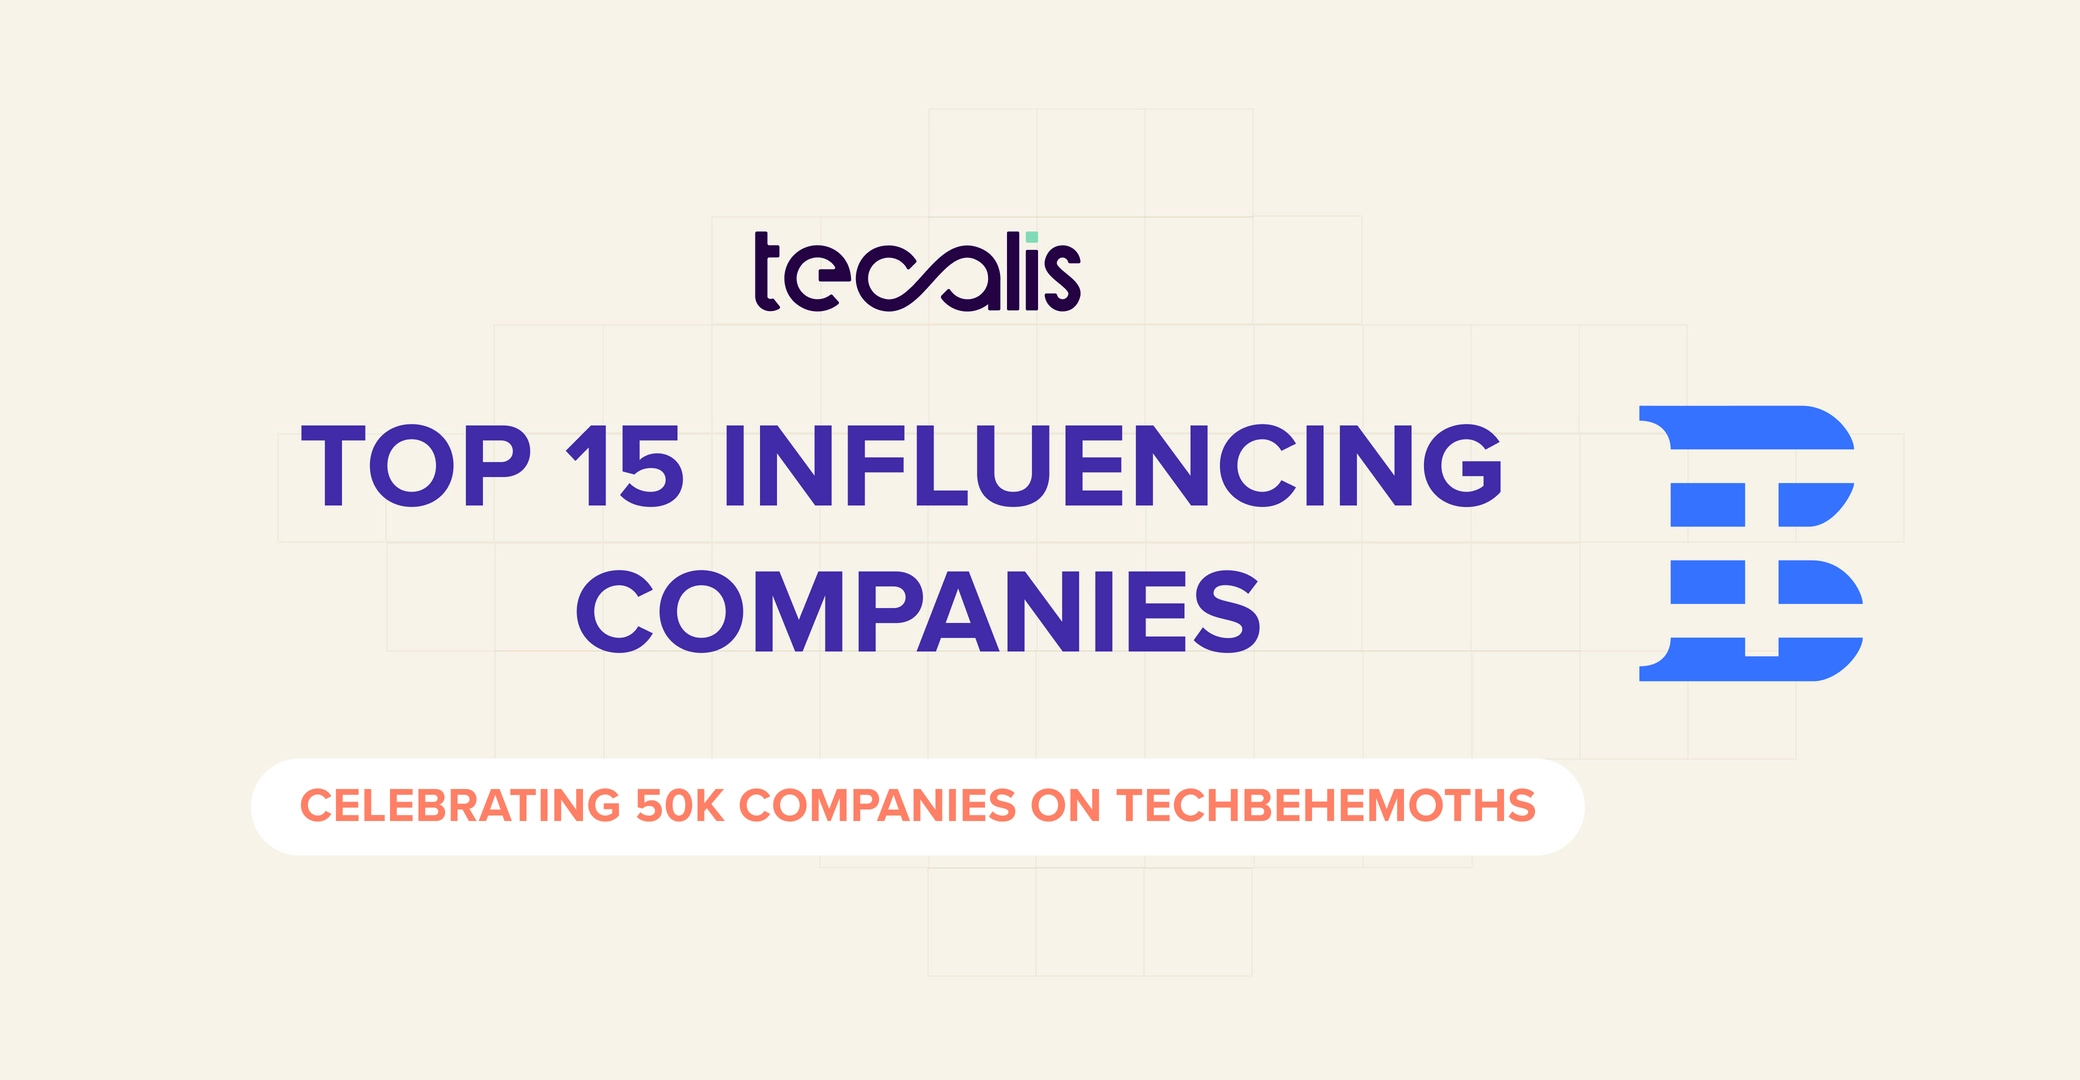 Tecalis compañía IT más influyente por TechBehemoths